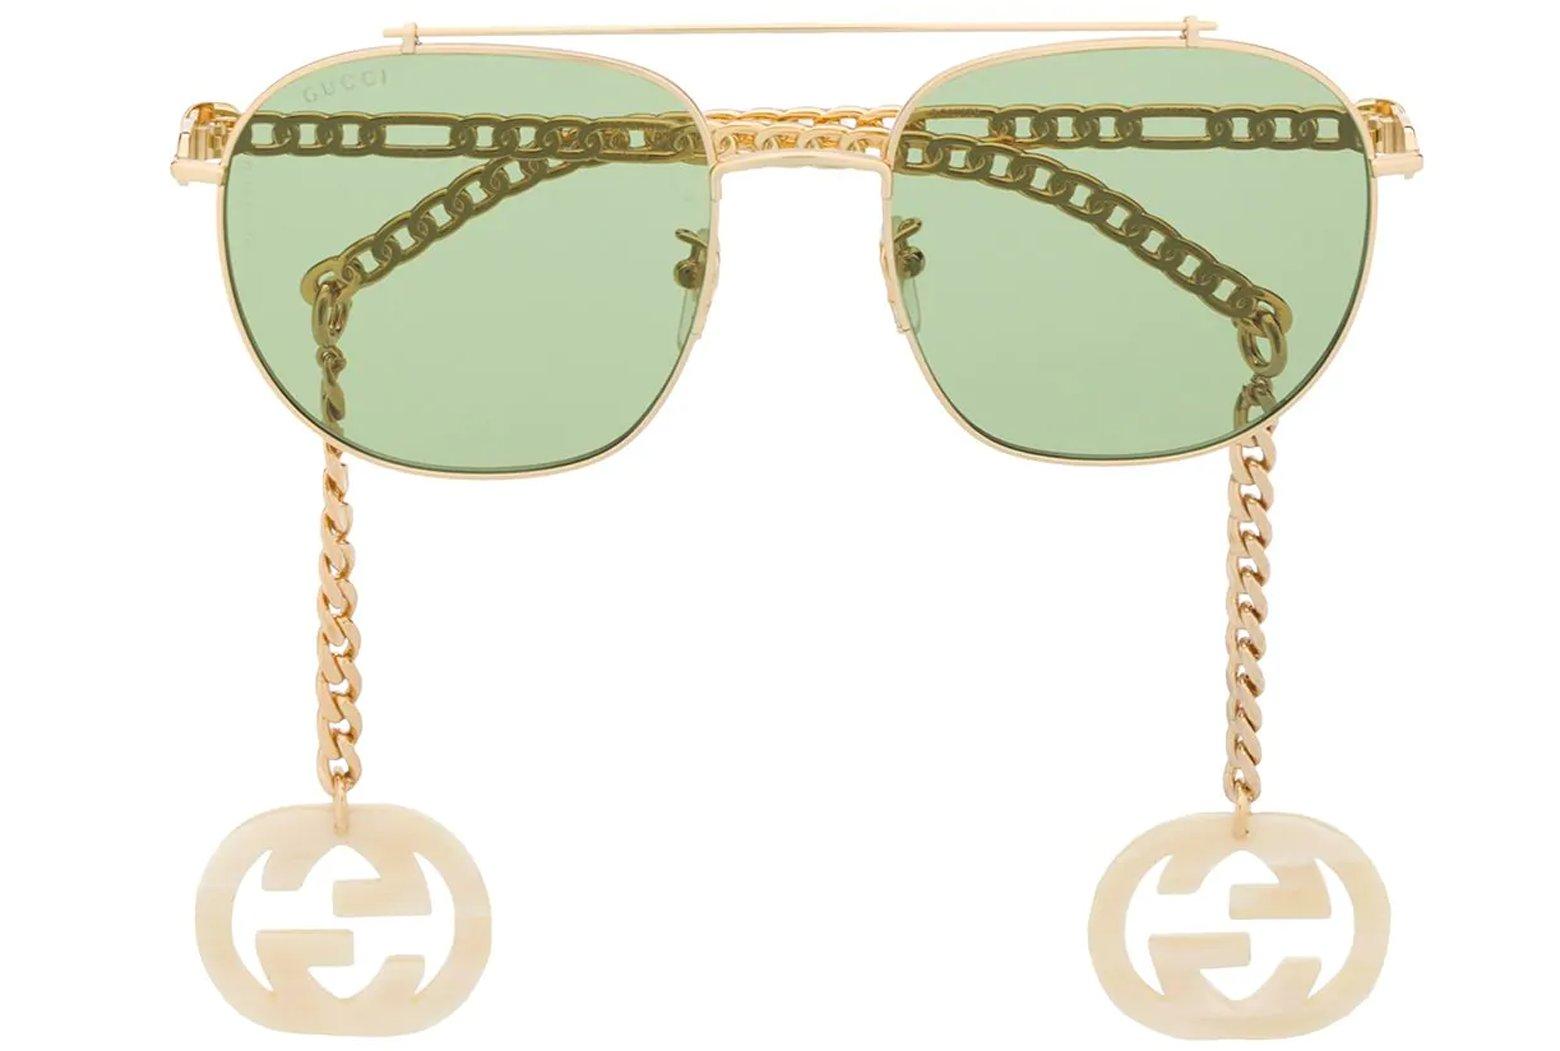 Gucci Sunglasses Women's GG1033S 003 Gold Necklace Chain 57-21-145